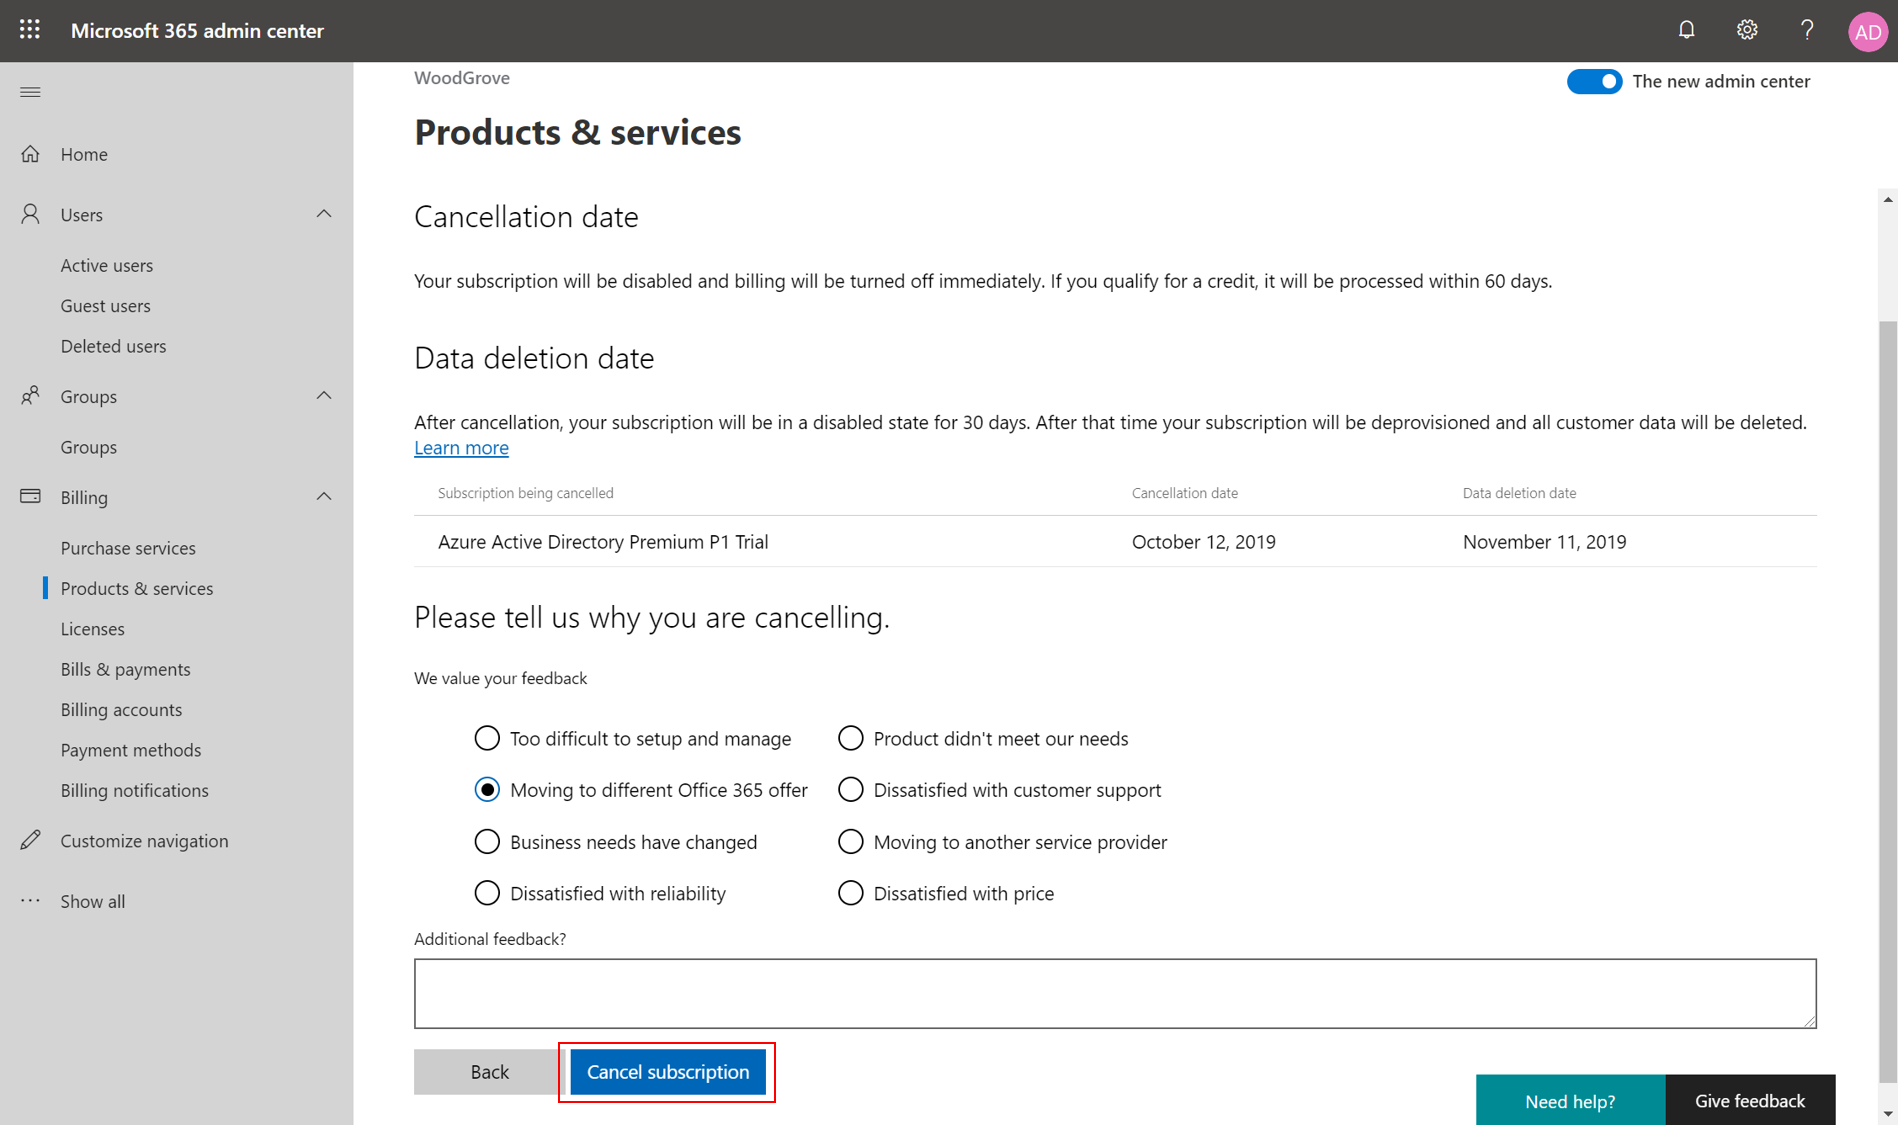 Captura de tela que mostra as opções de feedback e o botão para cancelar uma assinatura.